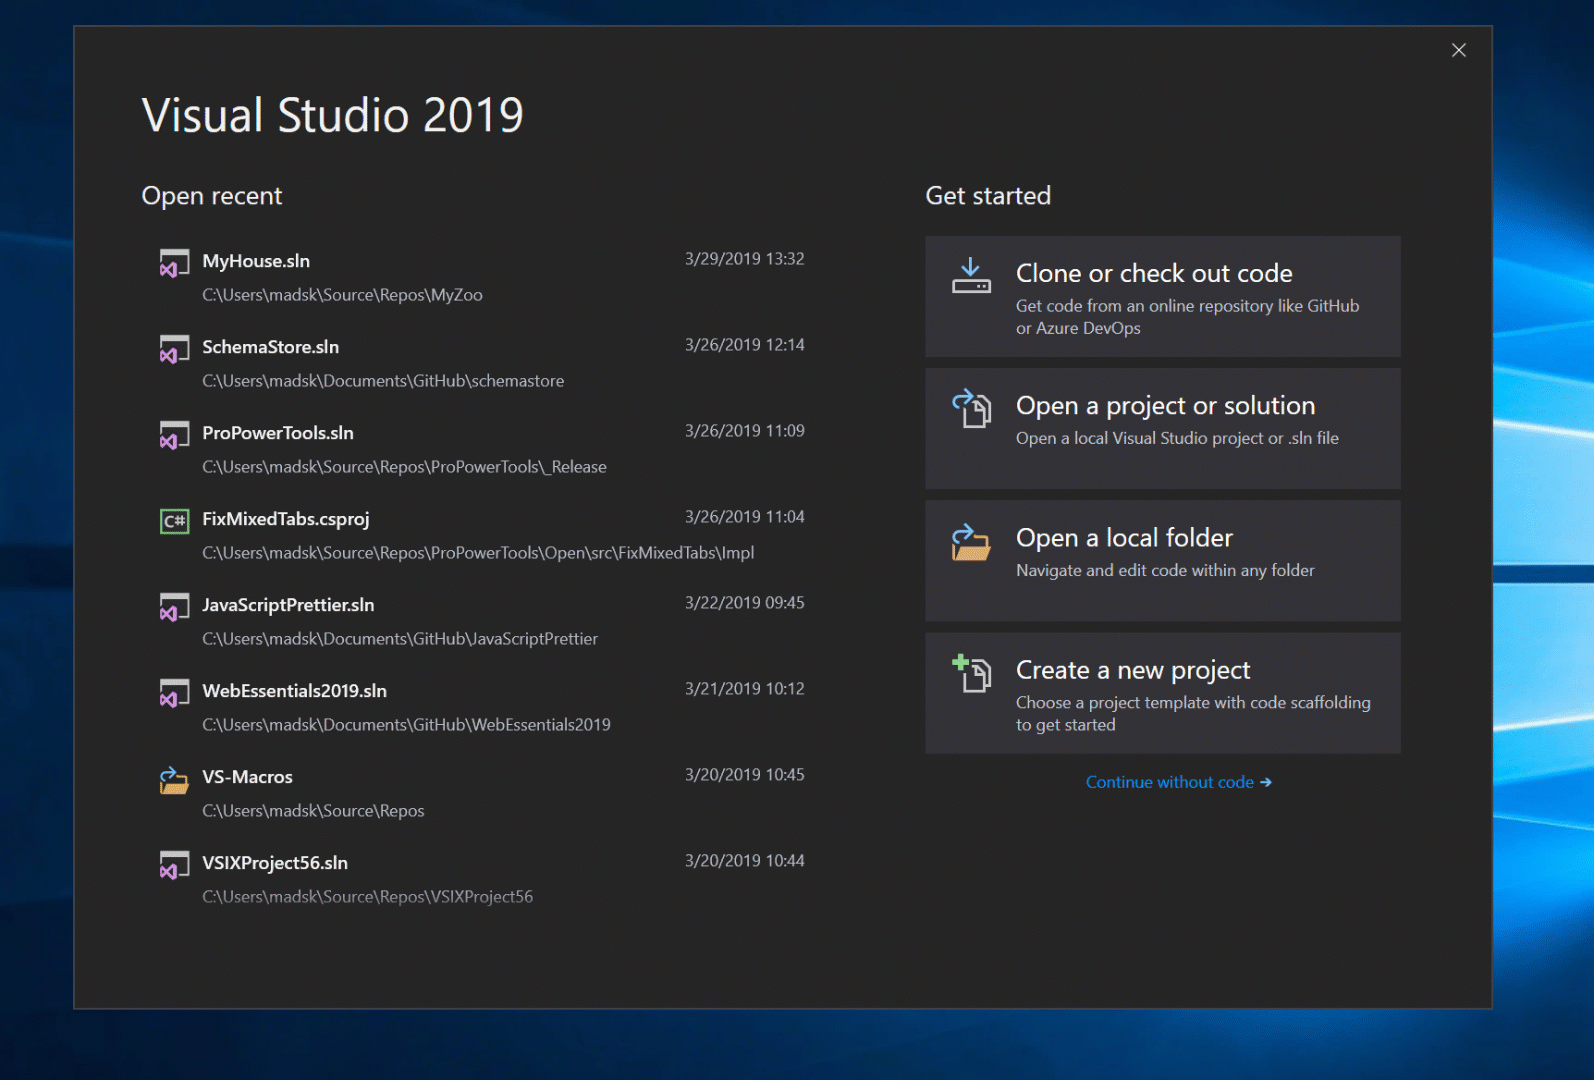 Animación de la experiencia con "prioridad de Git" en Visual Studio 2019